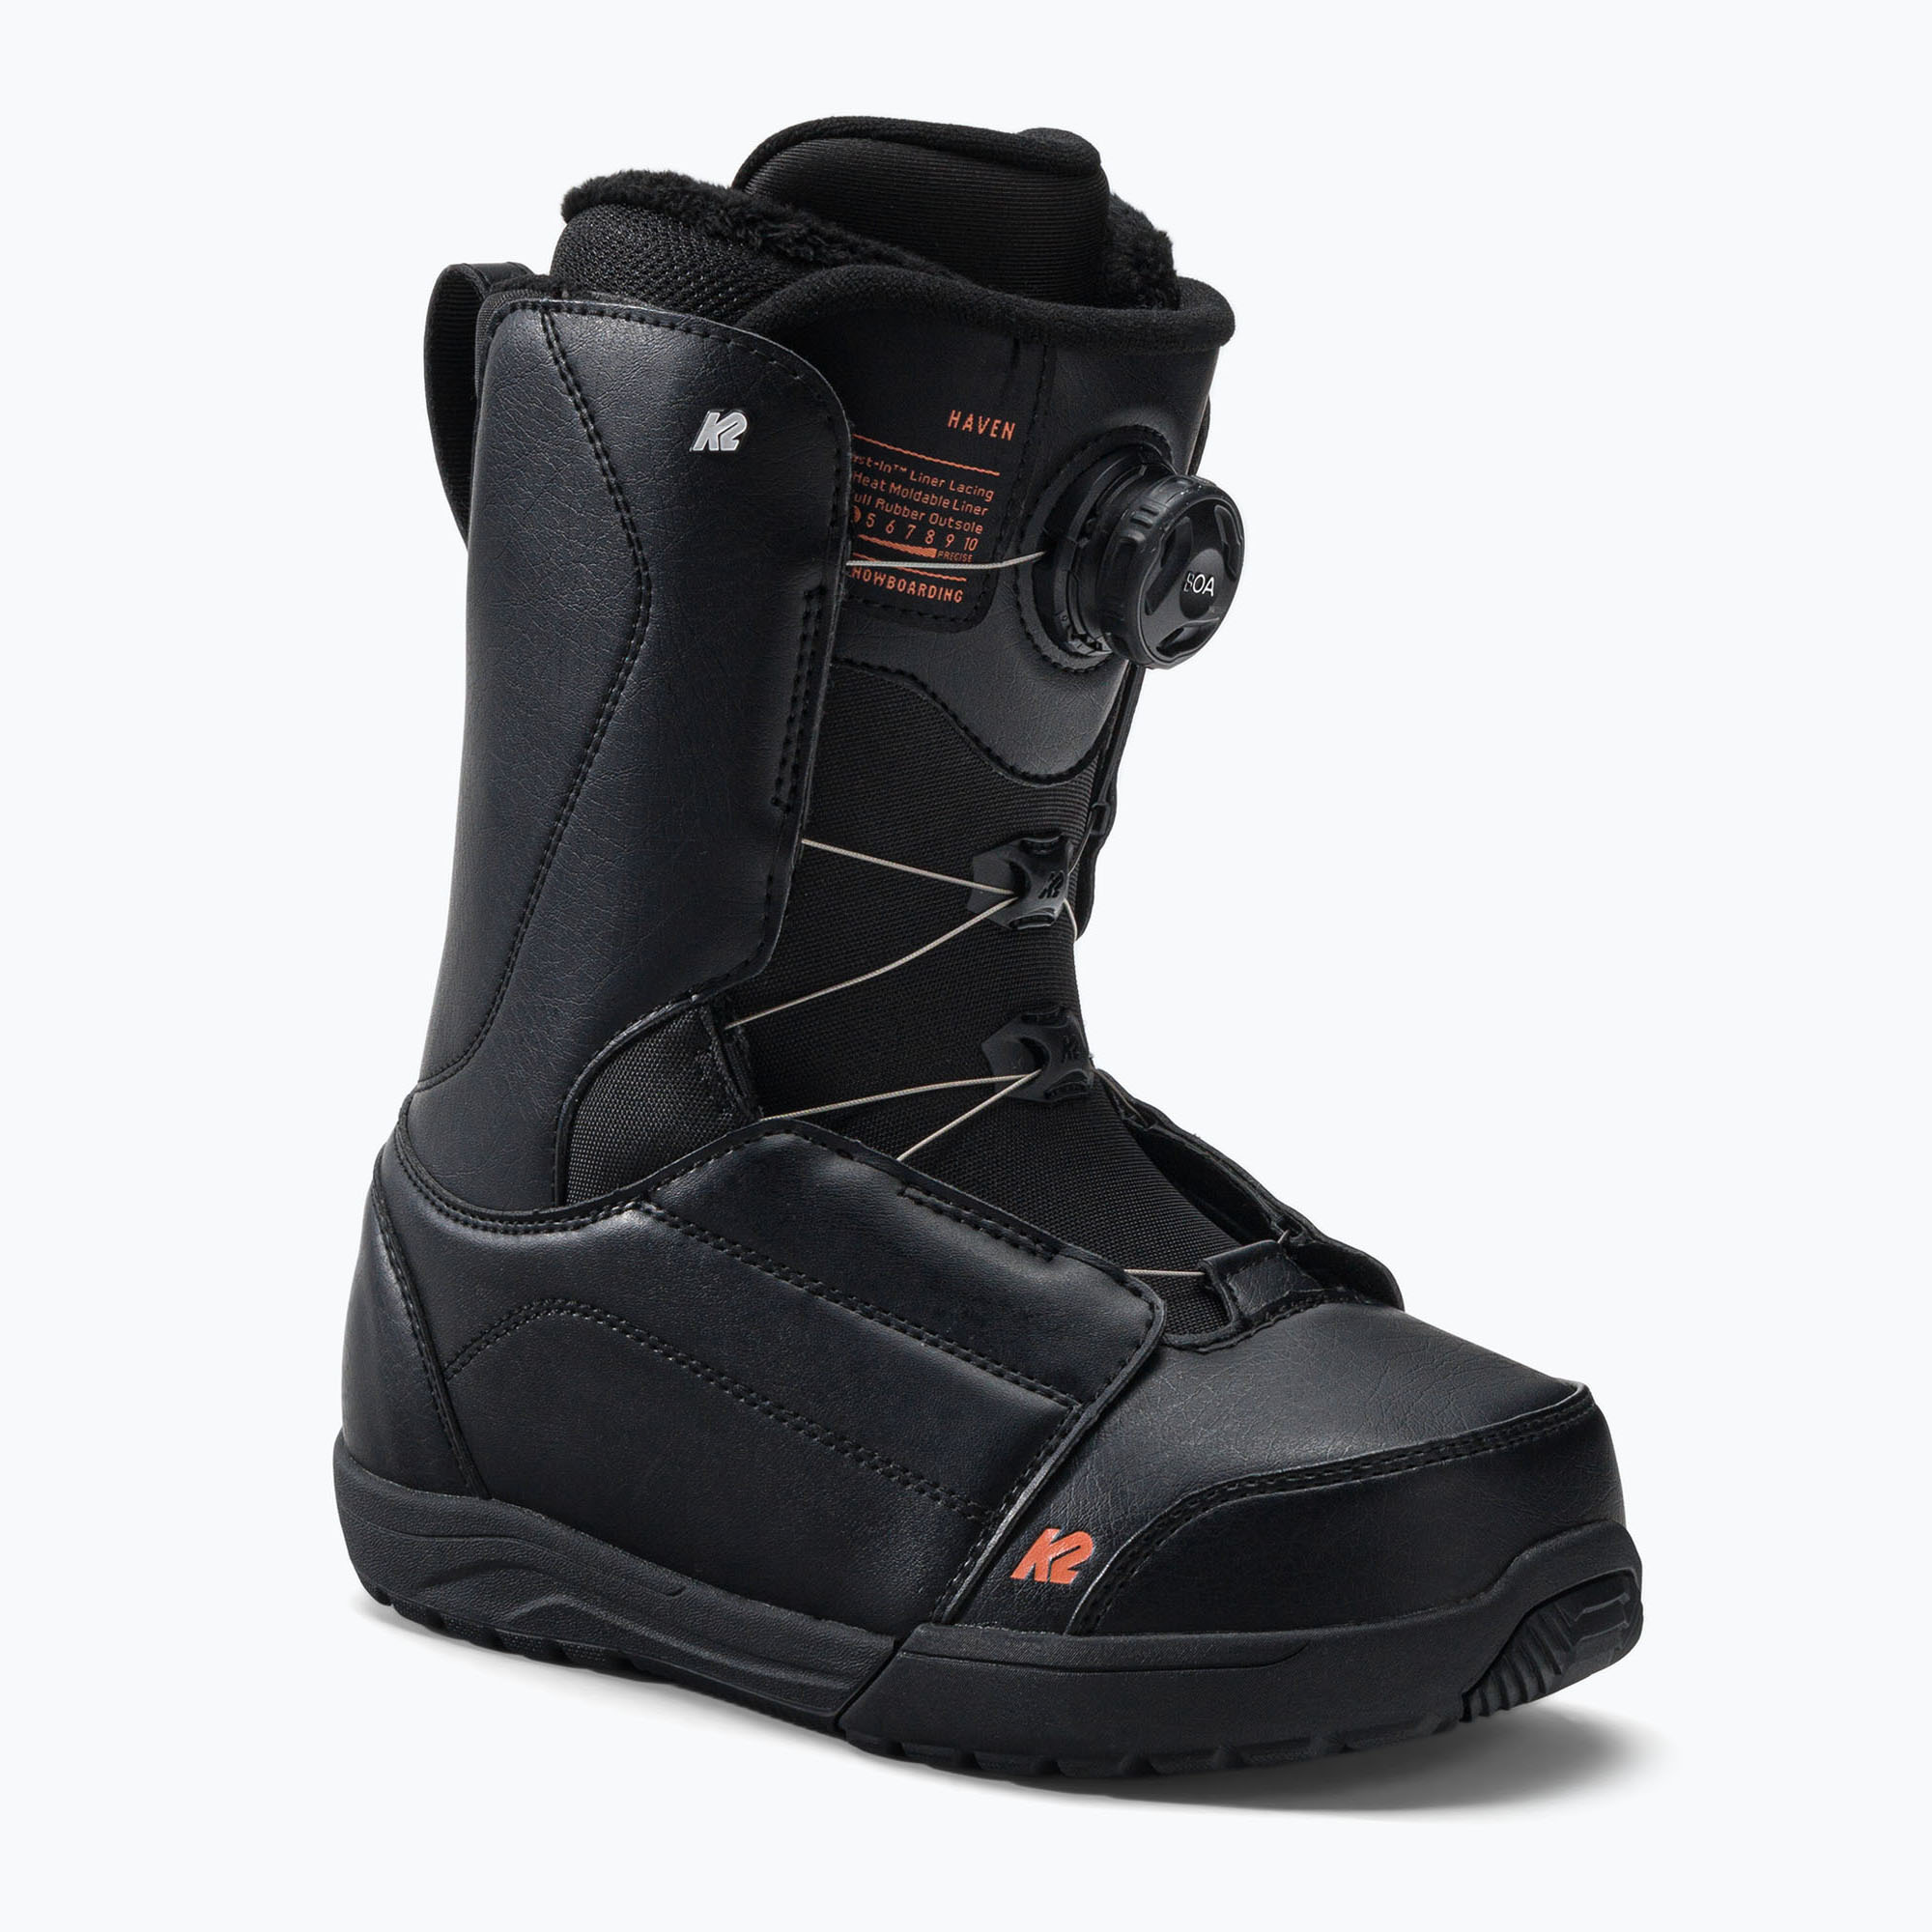 Boots de snowboard K2 Haven, verde, 11E2022